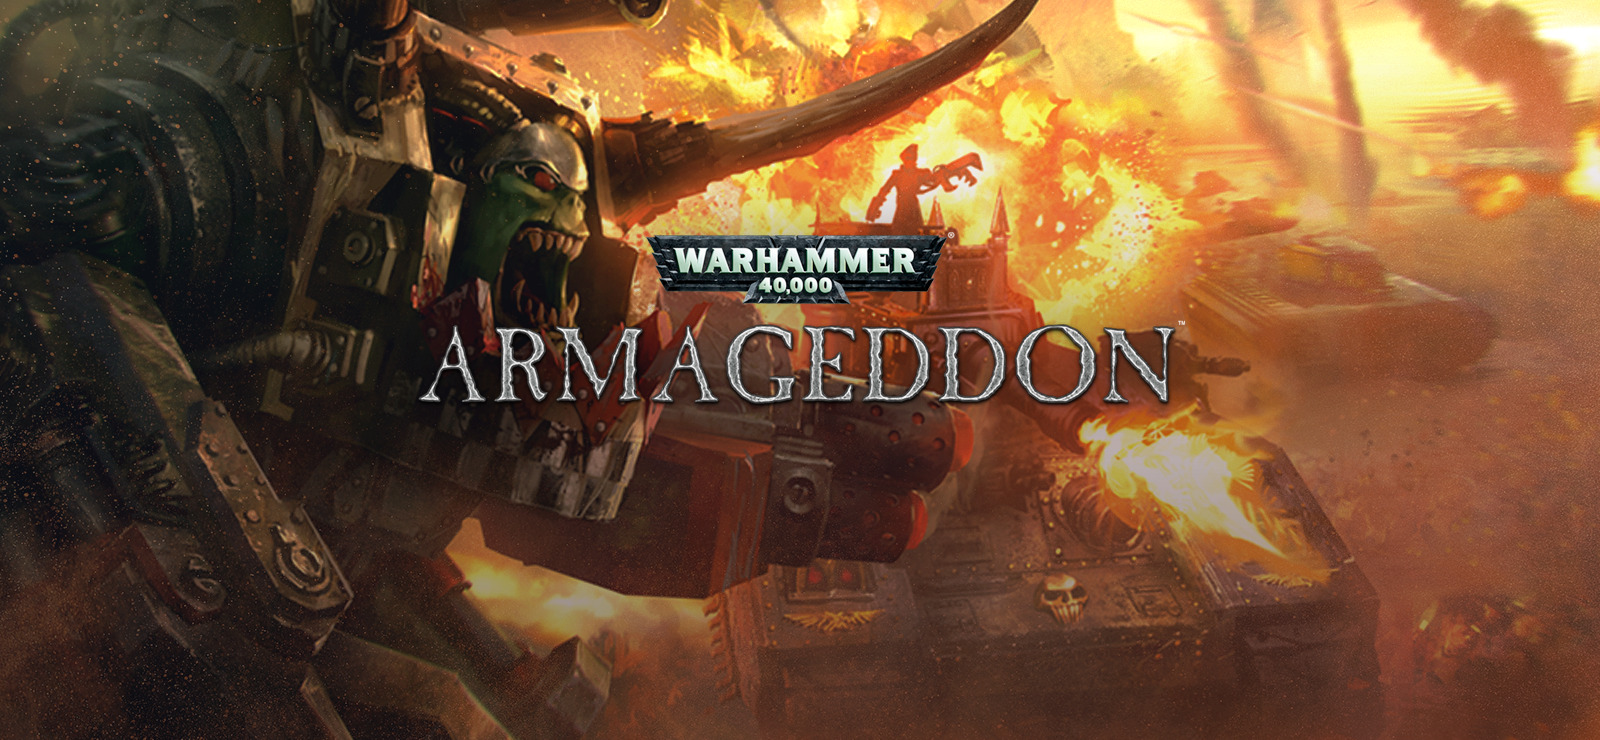 battlefield 5 armageddon release date